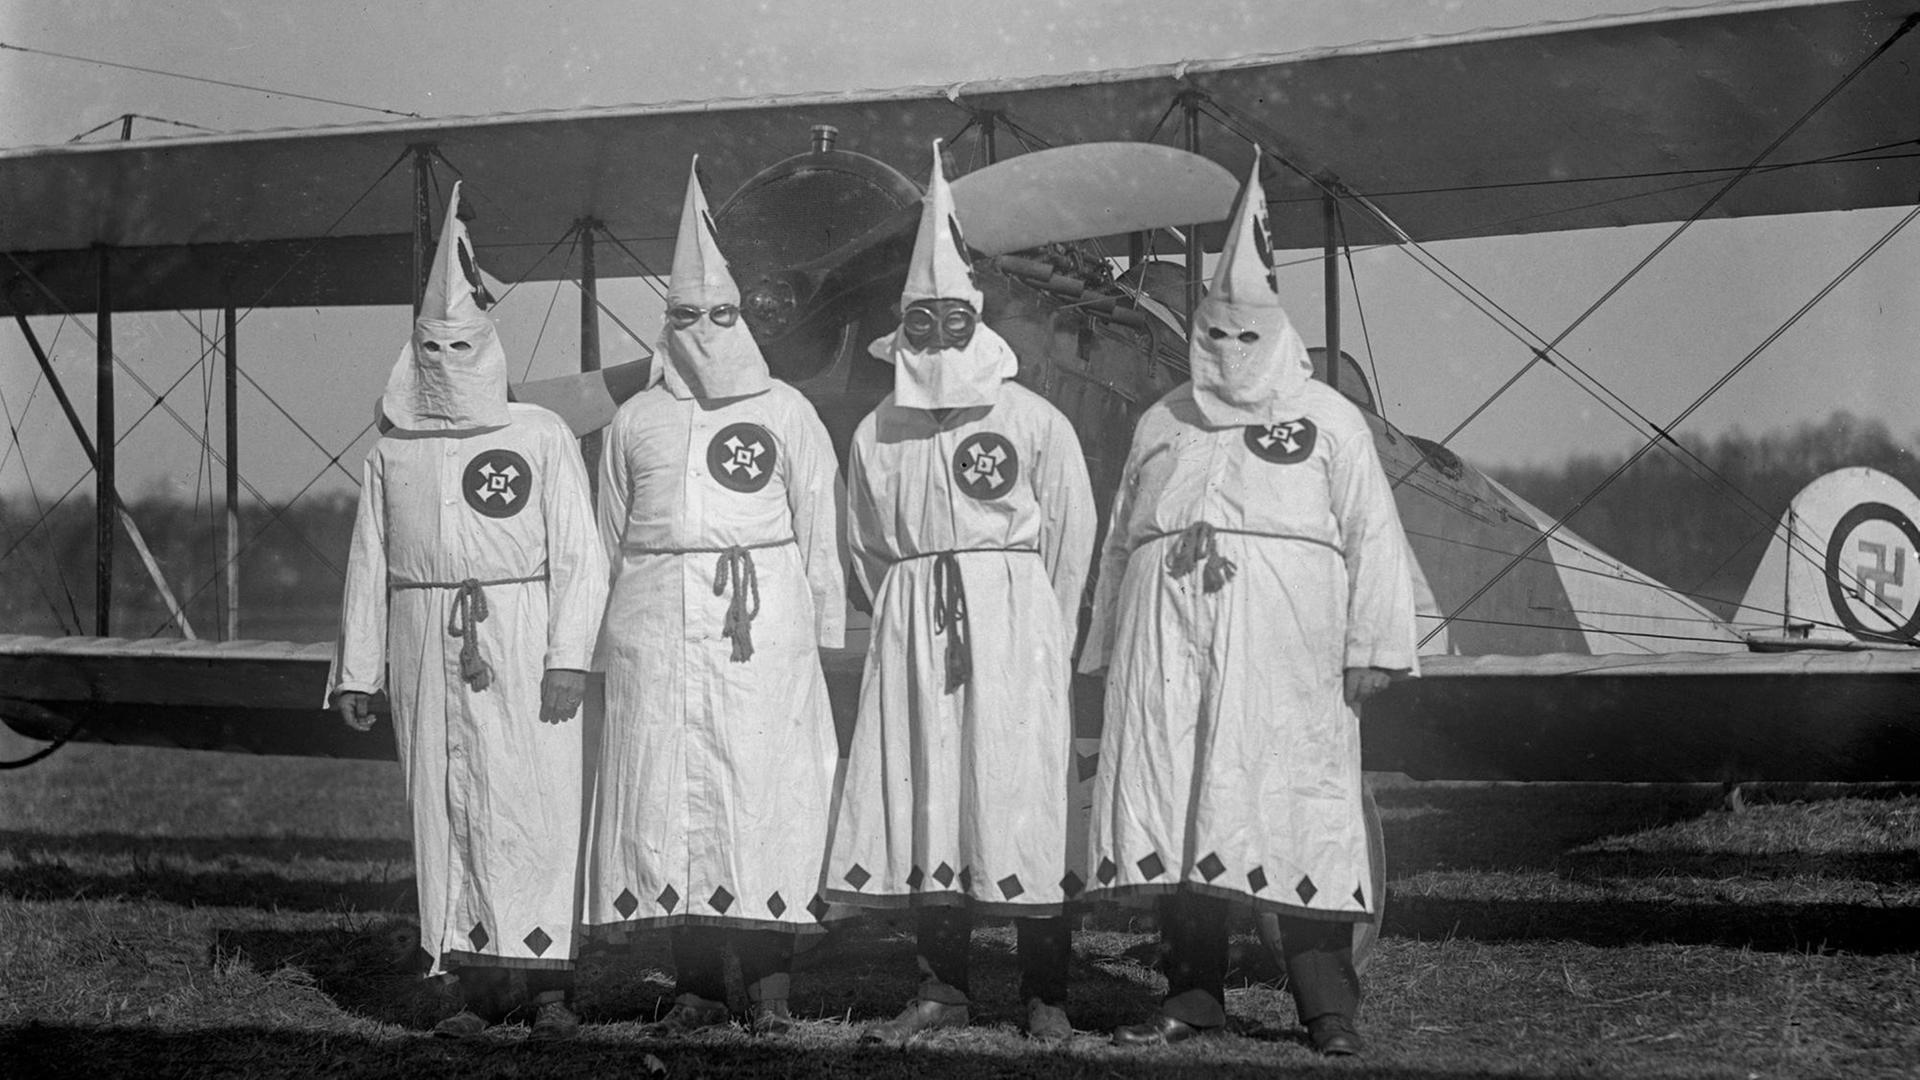 Vier Männer in weißen Kutten mit spitzzulaufenden Hüten stehen vor einer alten Propellermaschine. Das Bild ist schwarz-weiß.